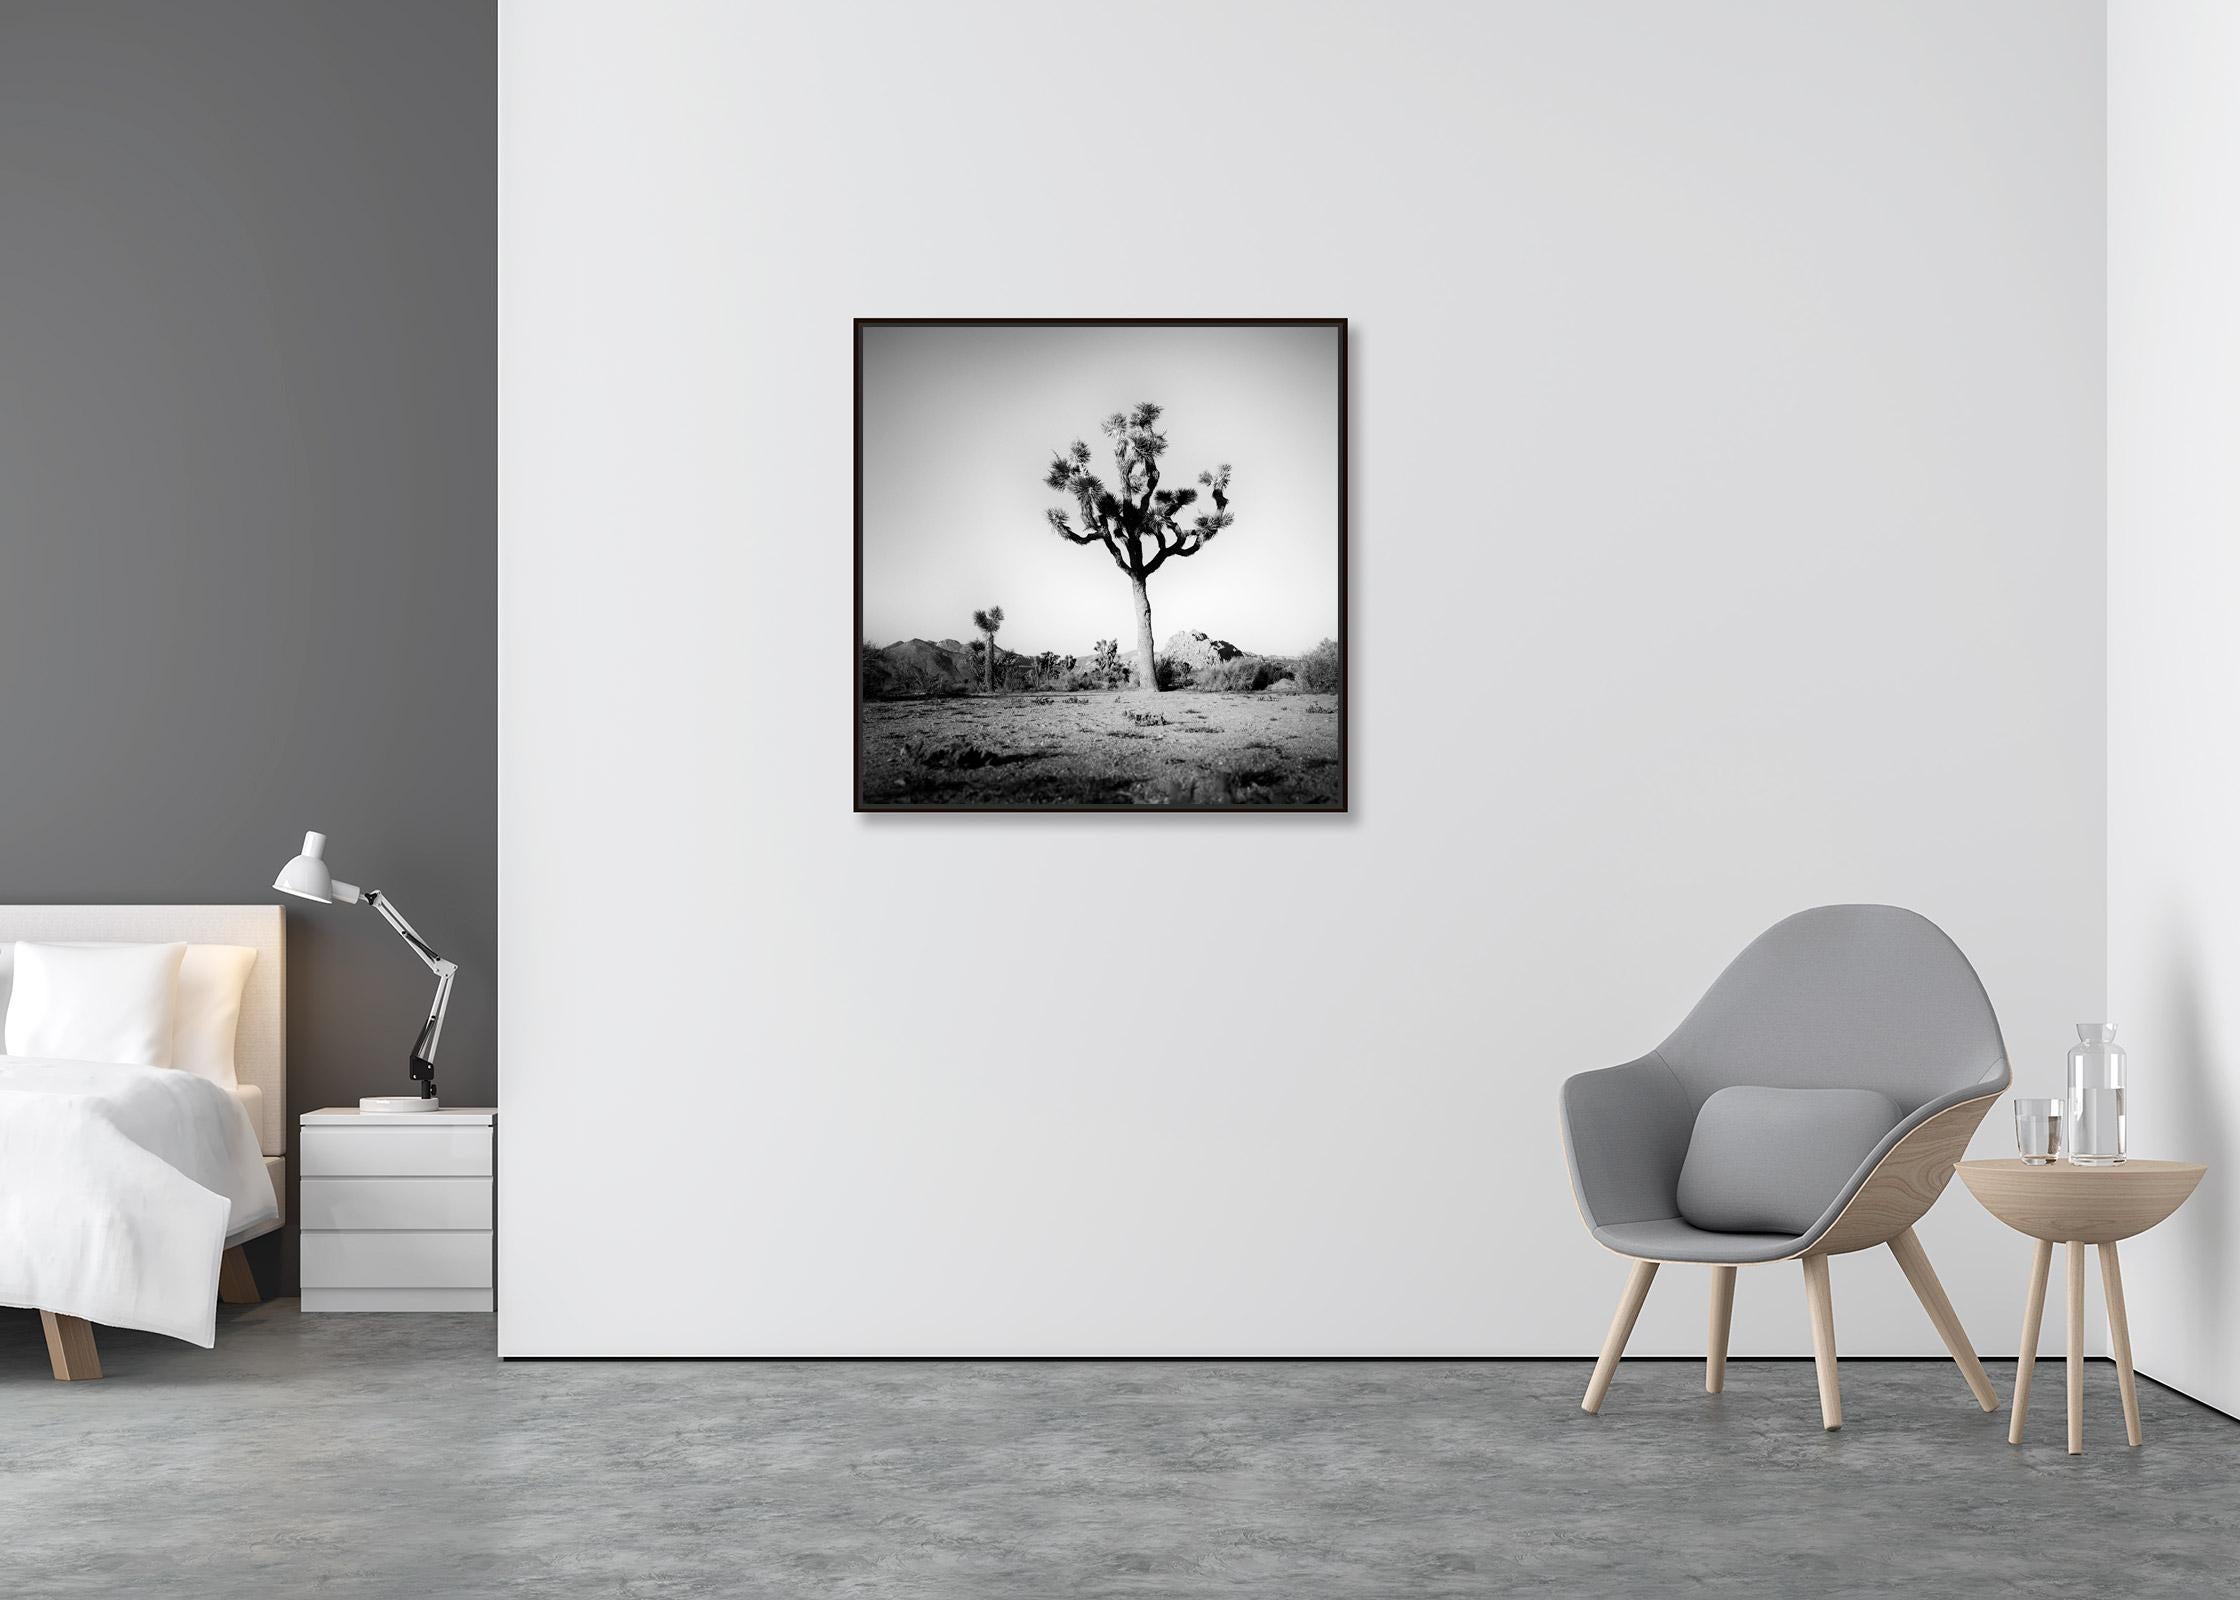 Joshua Tree, National Park, Kalifornien, USA, B&W-Landschaftsfotografie, Kunstdruck (Zeitgenössisch), Photograph, von Gerald Berghammer